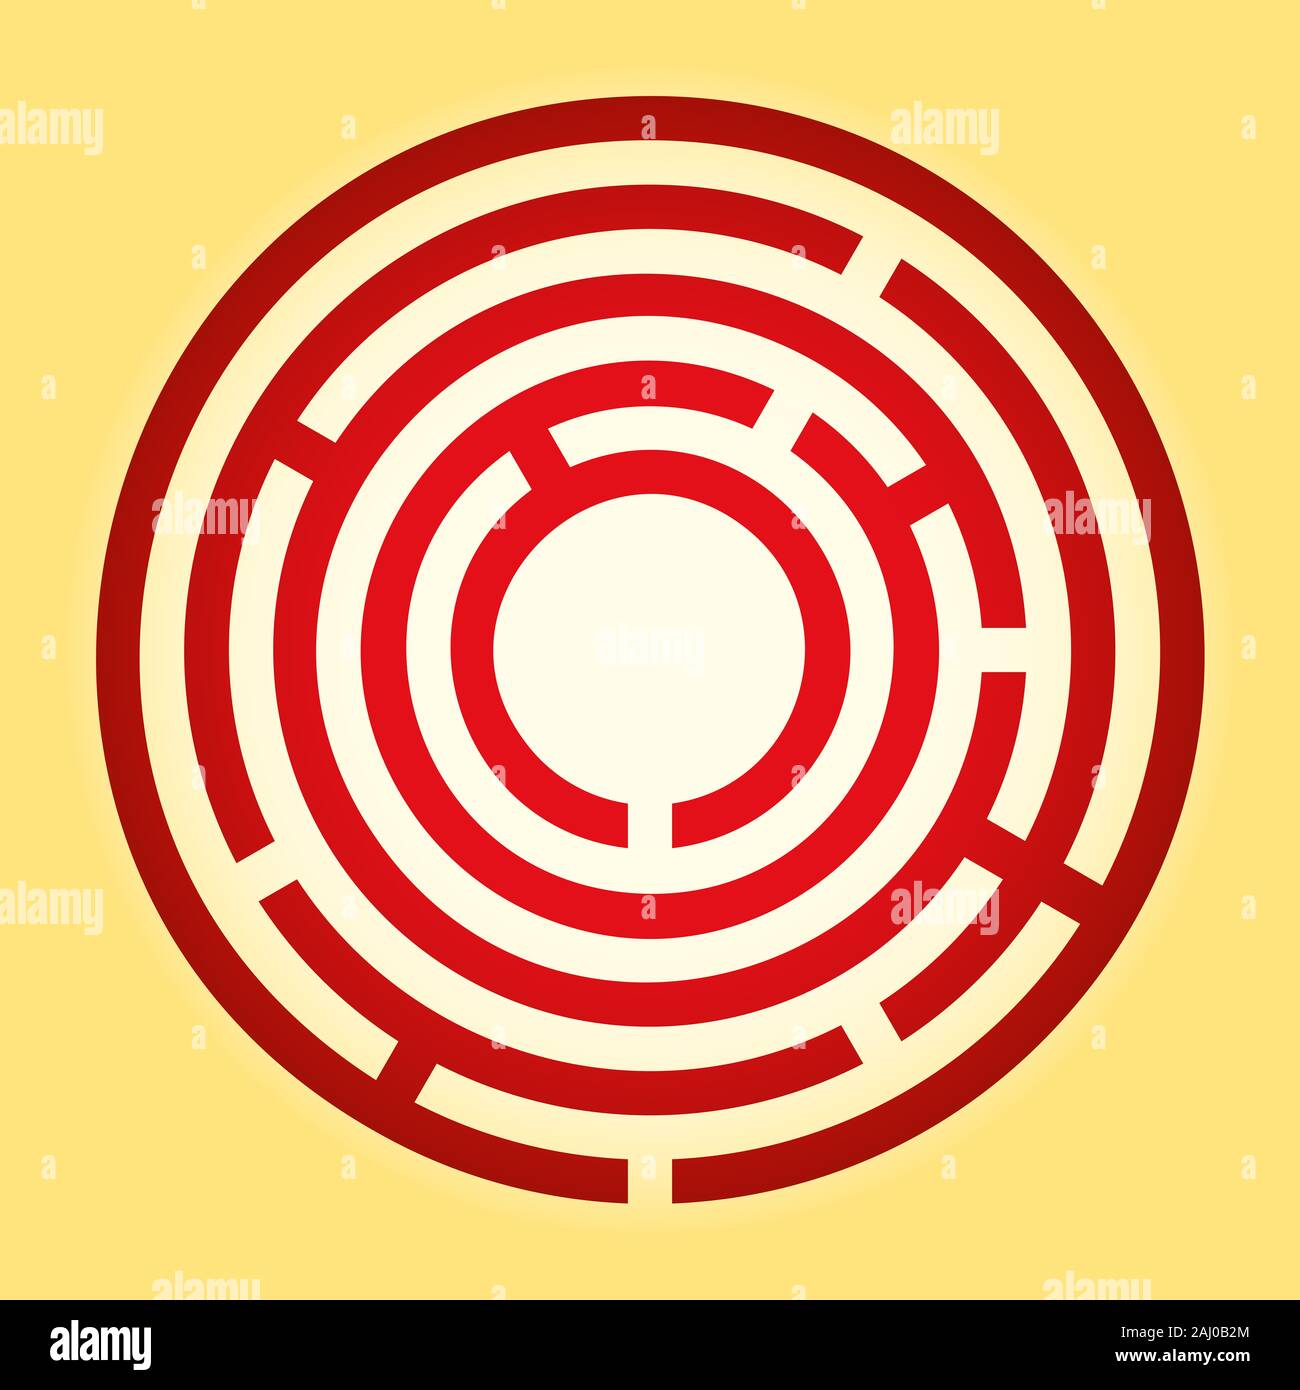 Farbige winzigen kreisförmigen Labyrinth. Red radial Labyrinth auf gelben Hintergrund. Finde den Weg zum Zentrum, folgen dem Weg vom Eingang zum Ziel. Stockfoto